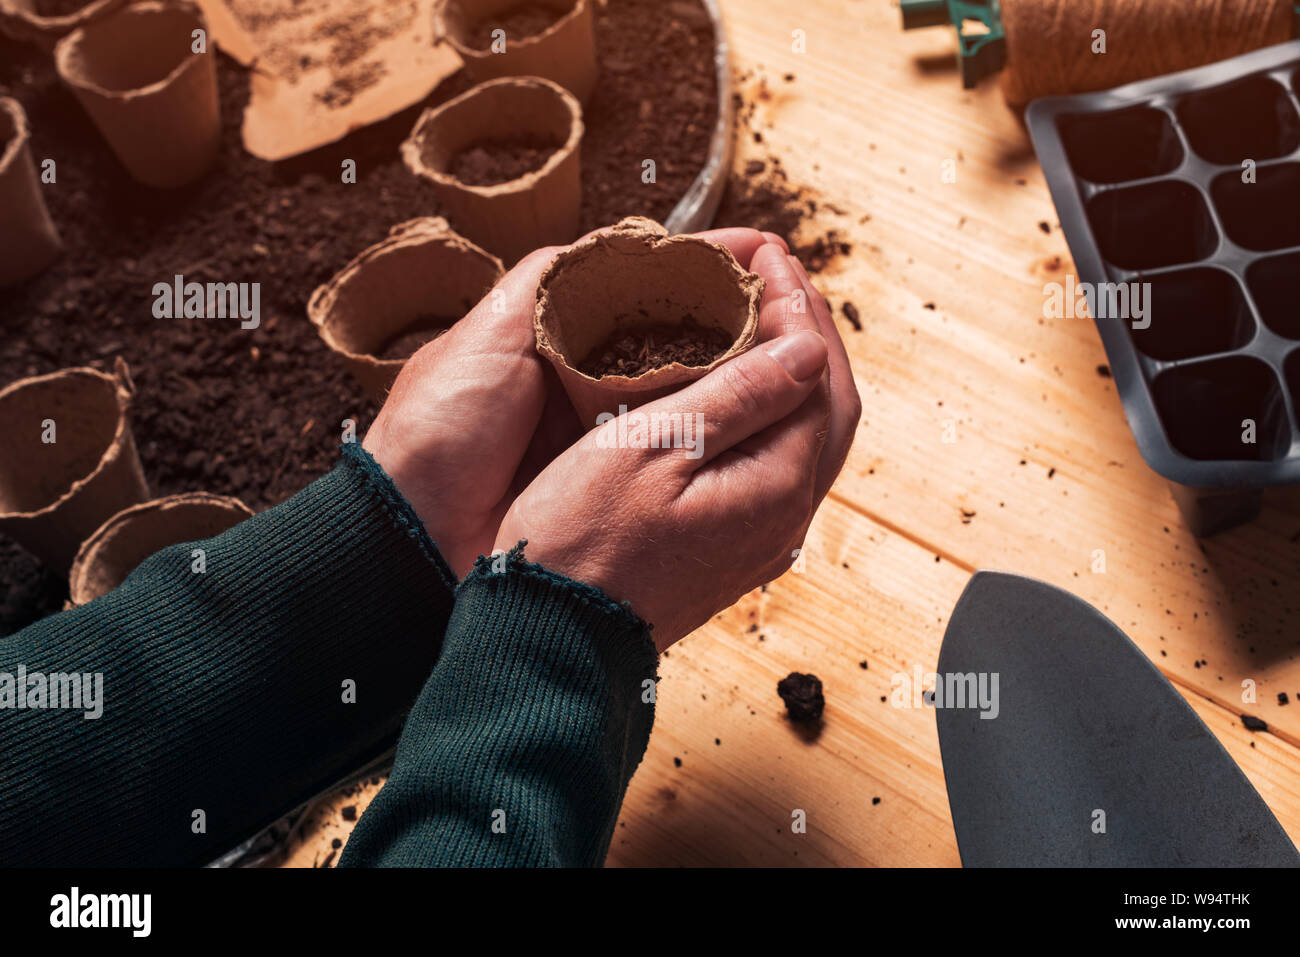 Gärtner mit biologisch abbaubaren Boden pot Container in Händen direkt über der Tabelle, die mit dem ökologischen Landbau und Gartengeräte für homegrown Essen Produ Stockfoto